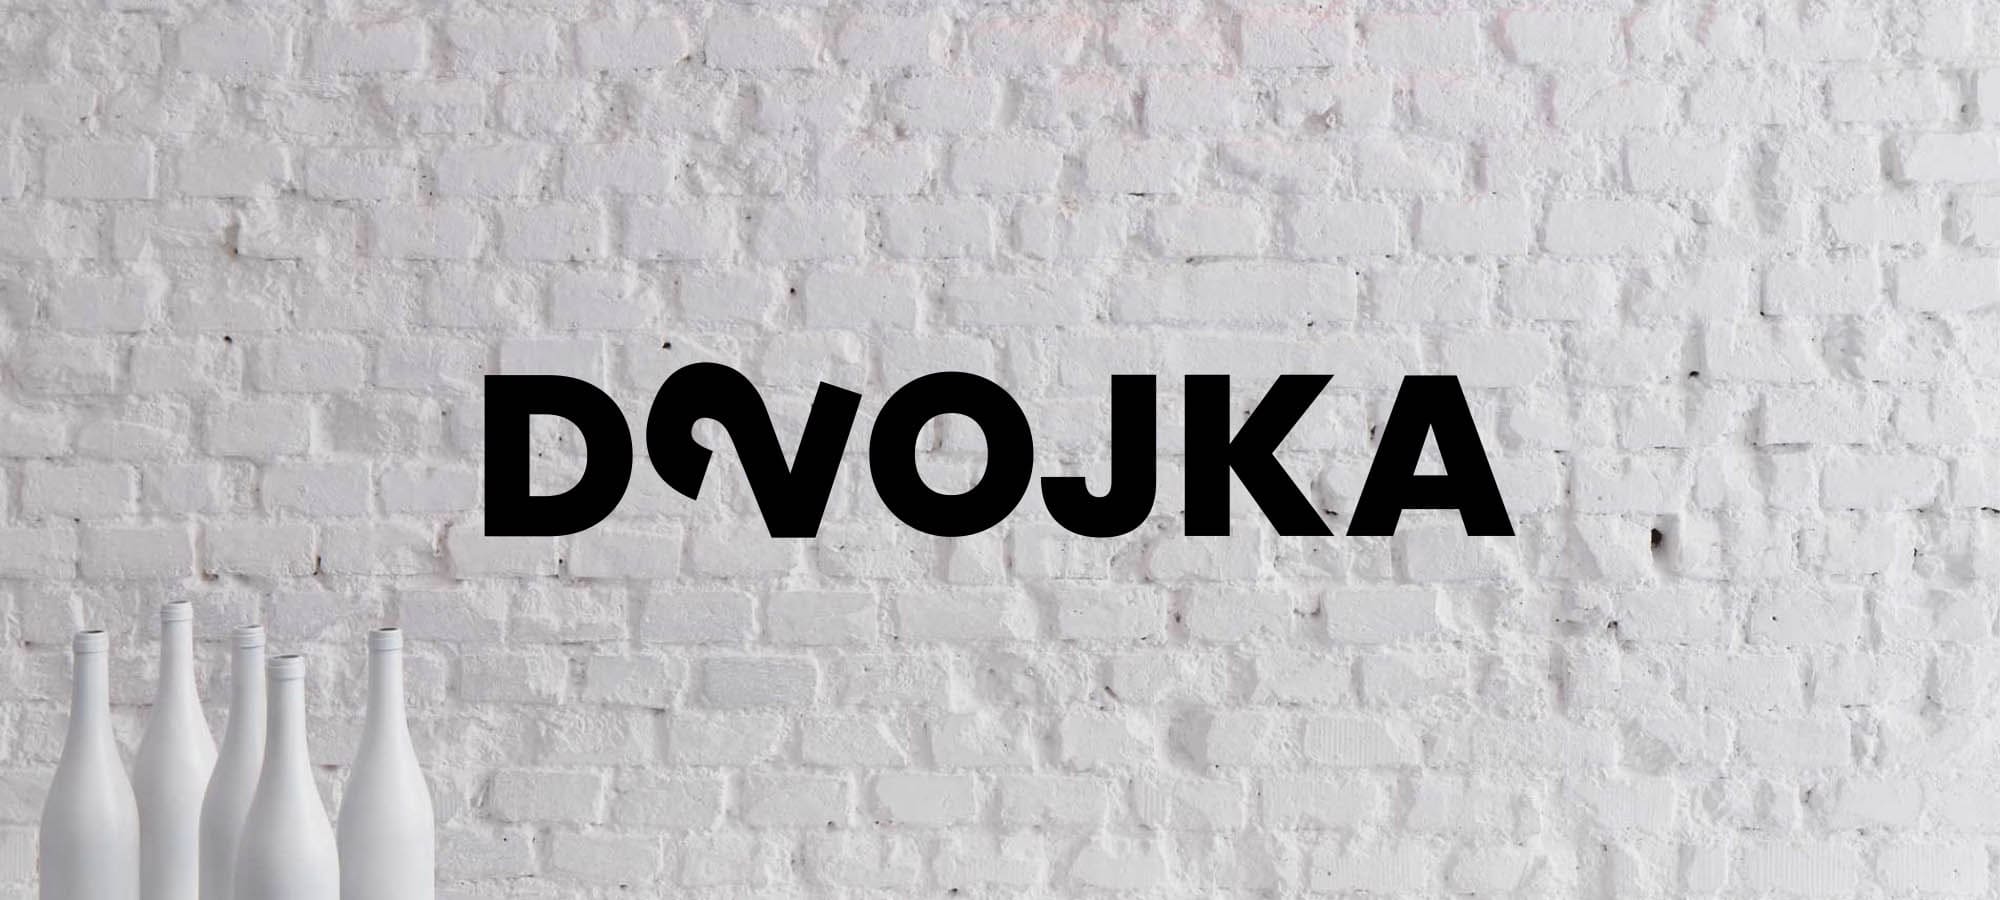 Logo of winebar Dvojka on the wall.